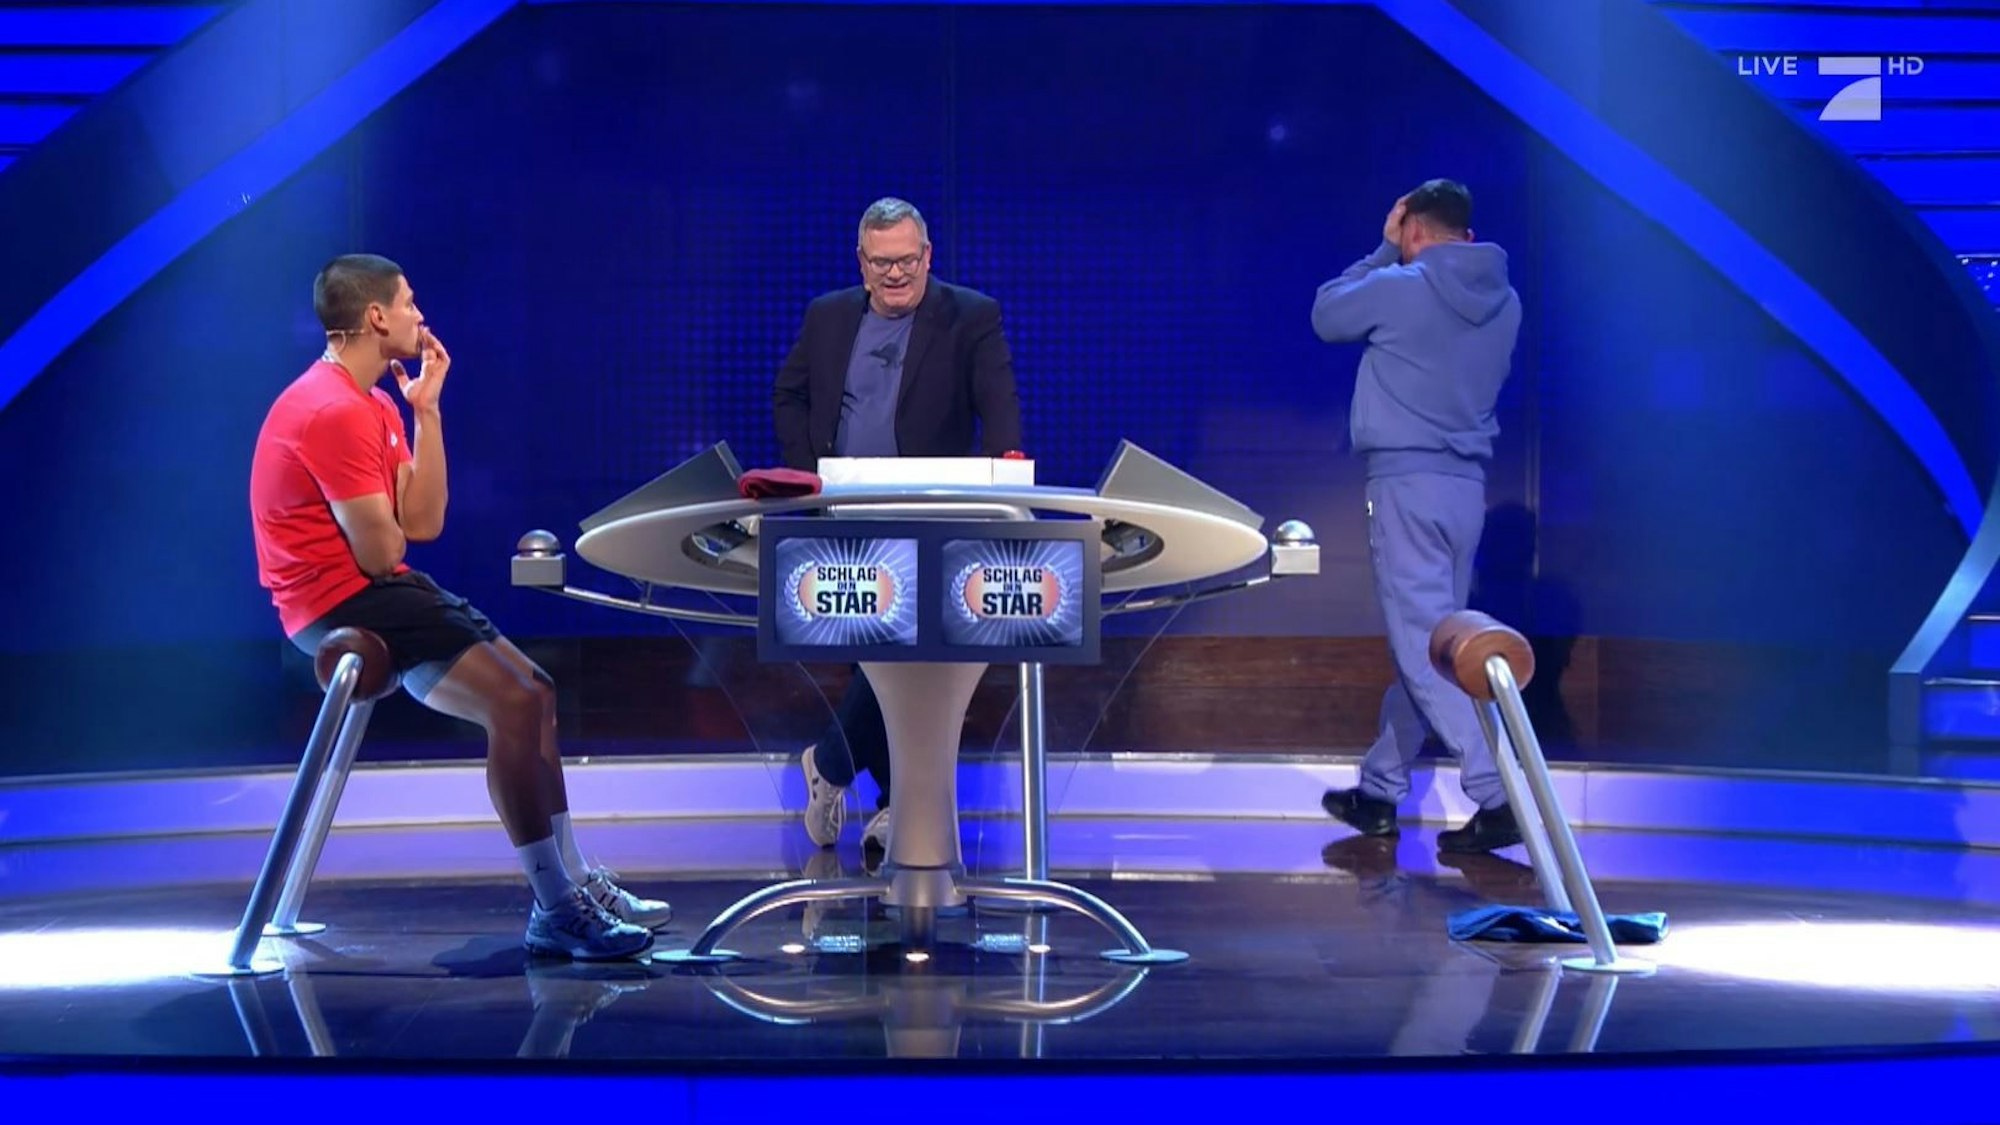 Musik-Star Bausa (r.) ärgert sich über seine Fehler im „Schlag den Star“-Duell mit Emilio Sakraya (l.). In der Mitte steht Moderator Elton.